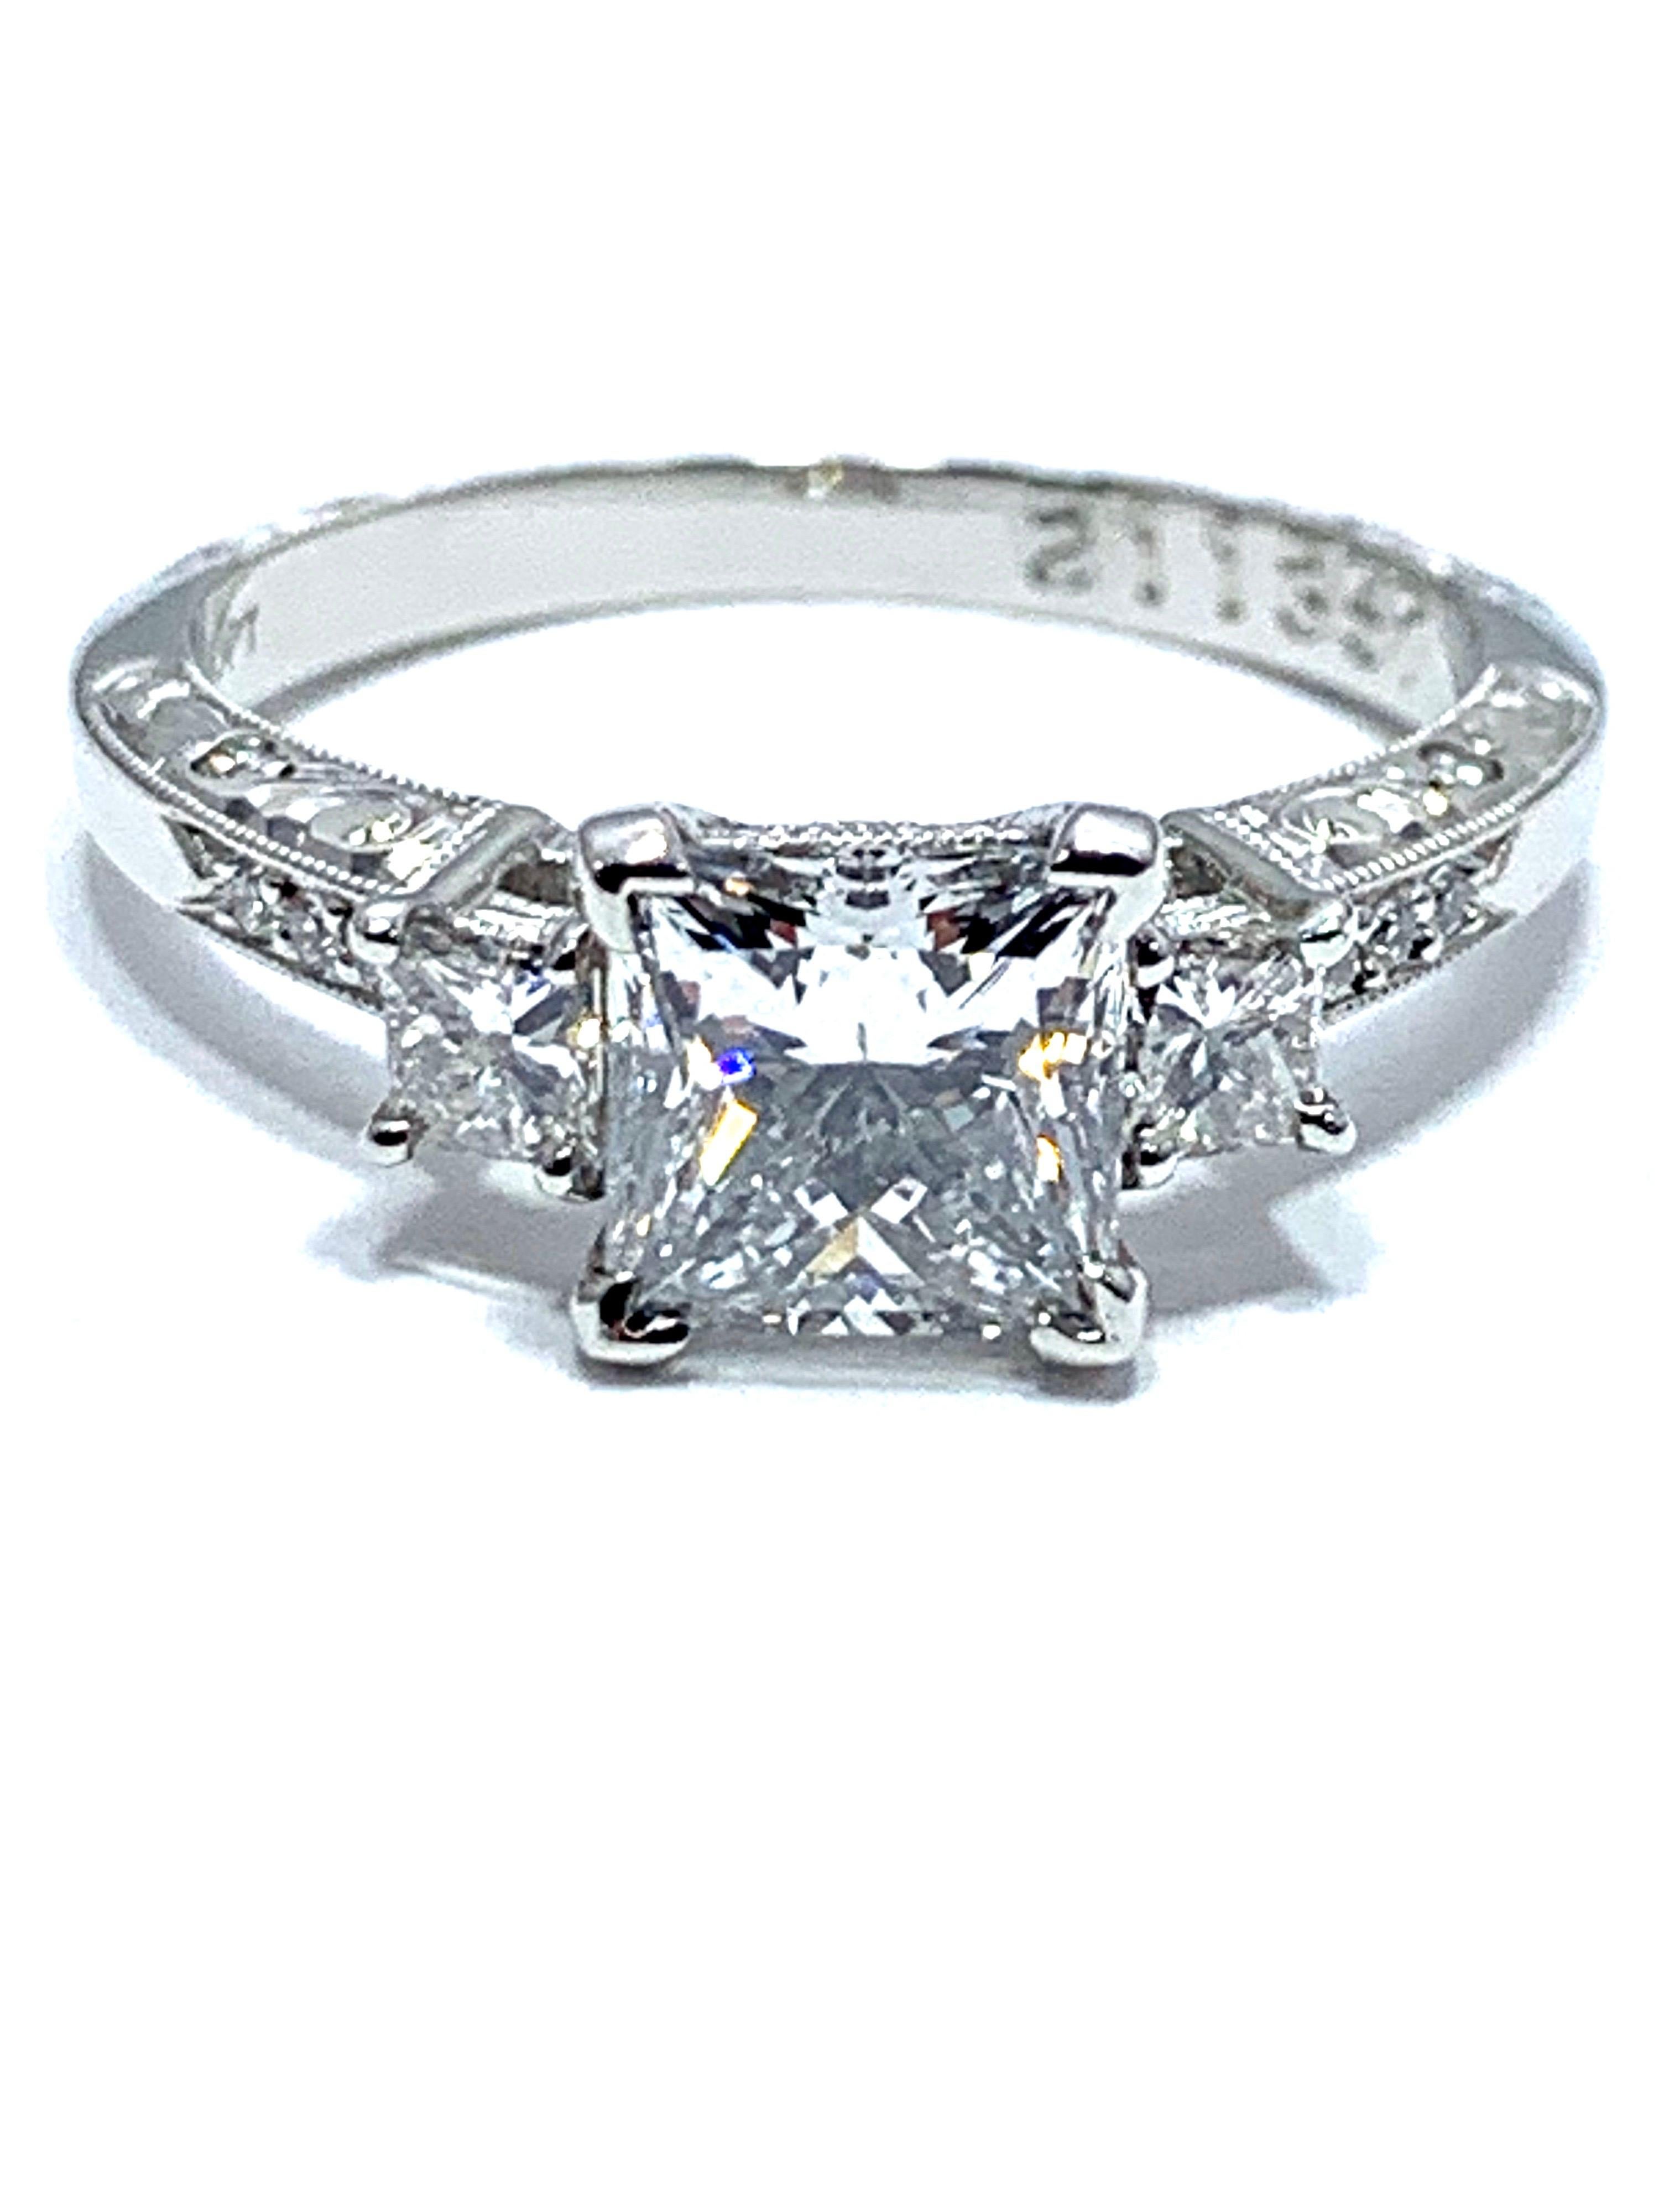 Une bague de fiançailles en diamant brillant Princesscut de 1,19 carat qui attire le regard.  Le diamant central est serti dans une tête de platine à quatre griffes avec une seule taille princesse de chaque côté et trois diamants ronds s'étendant le